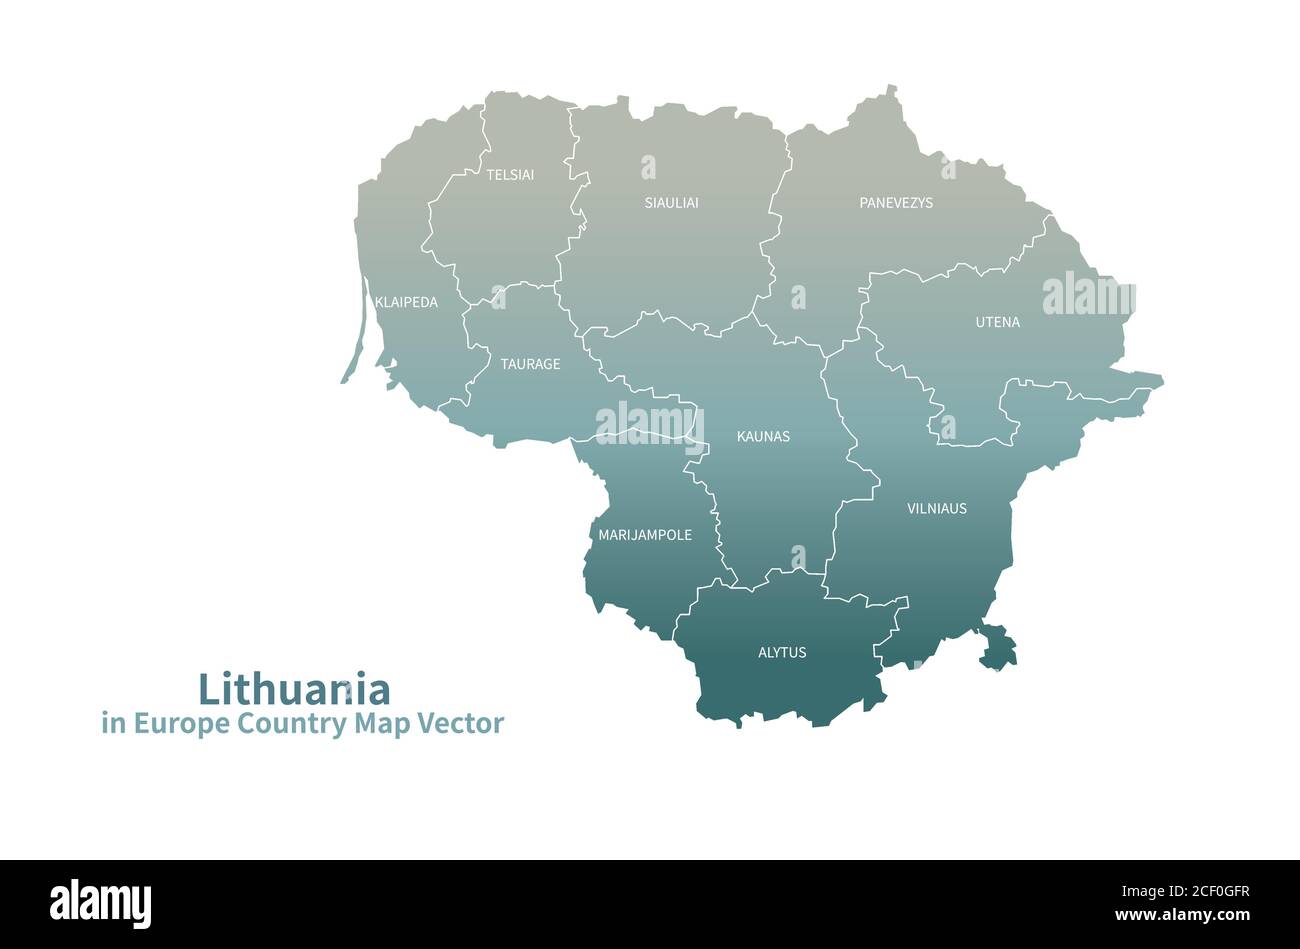 Lithuania vector map. European Country Map Green Series. Stock Vector